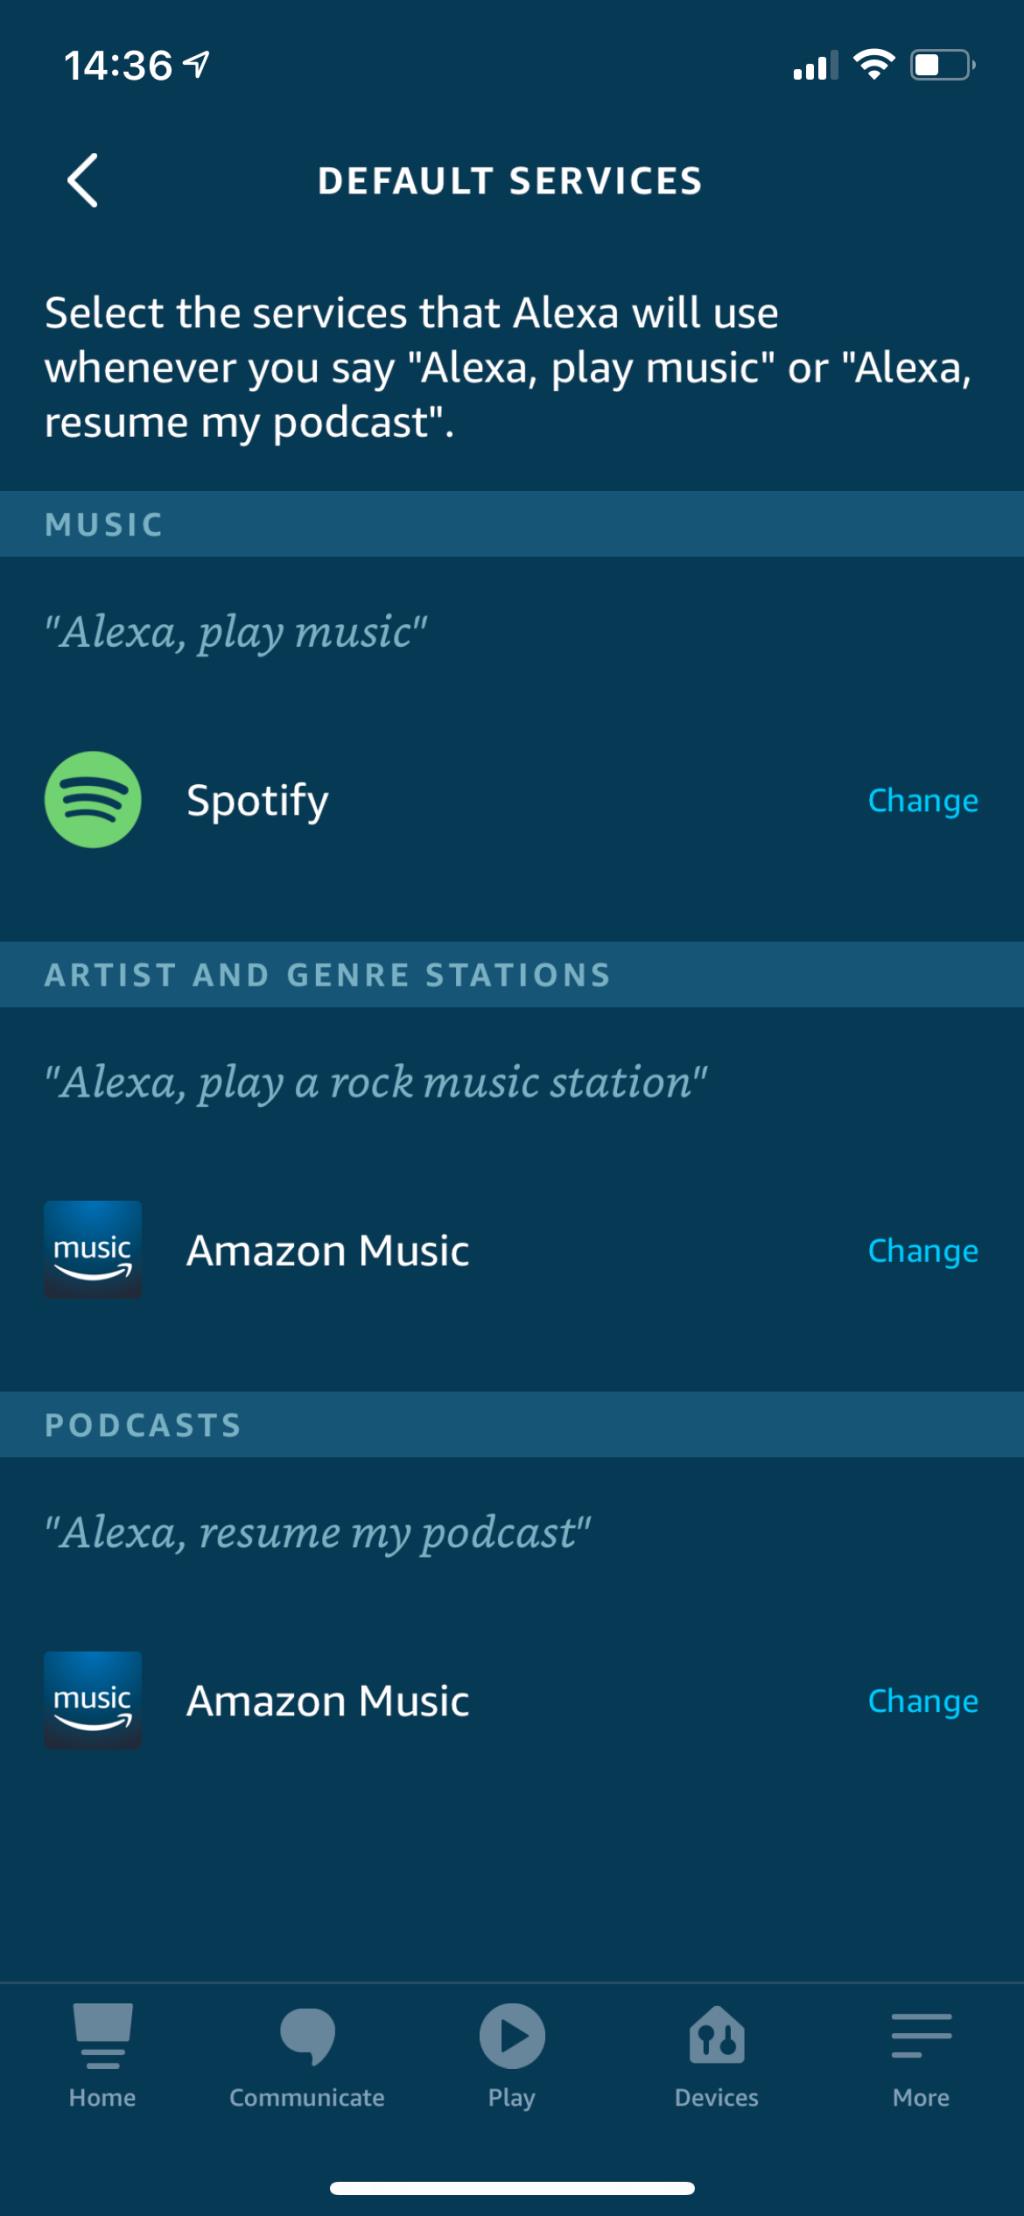 So verbinden Sie Spotify mit Alexa und spielen Musik auf Ihrem Echo